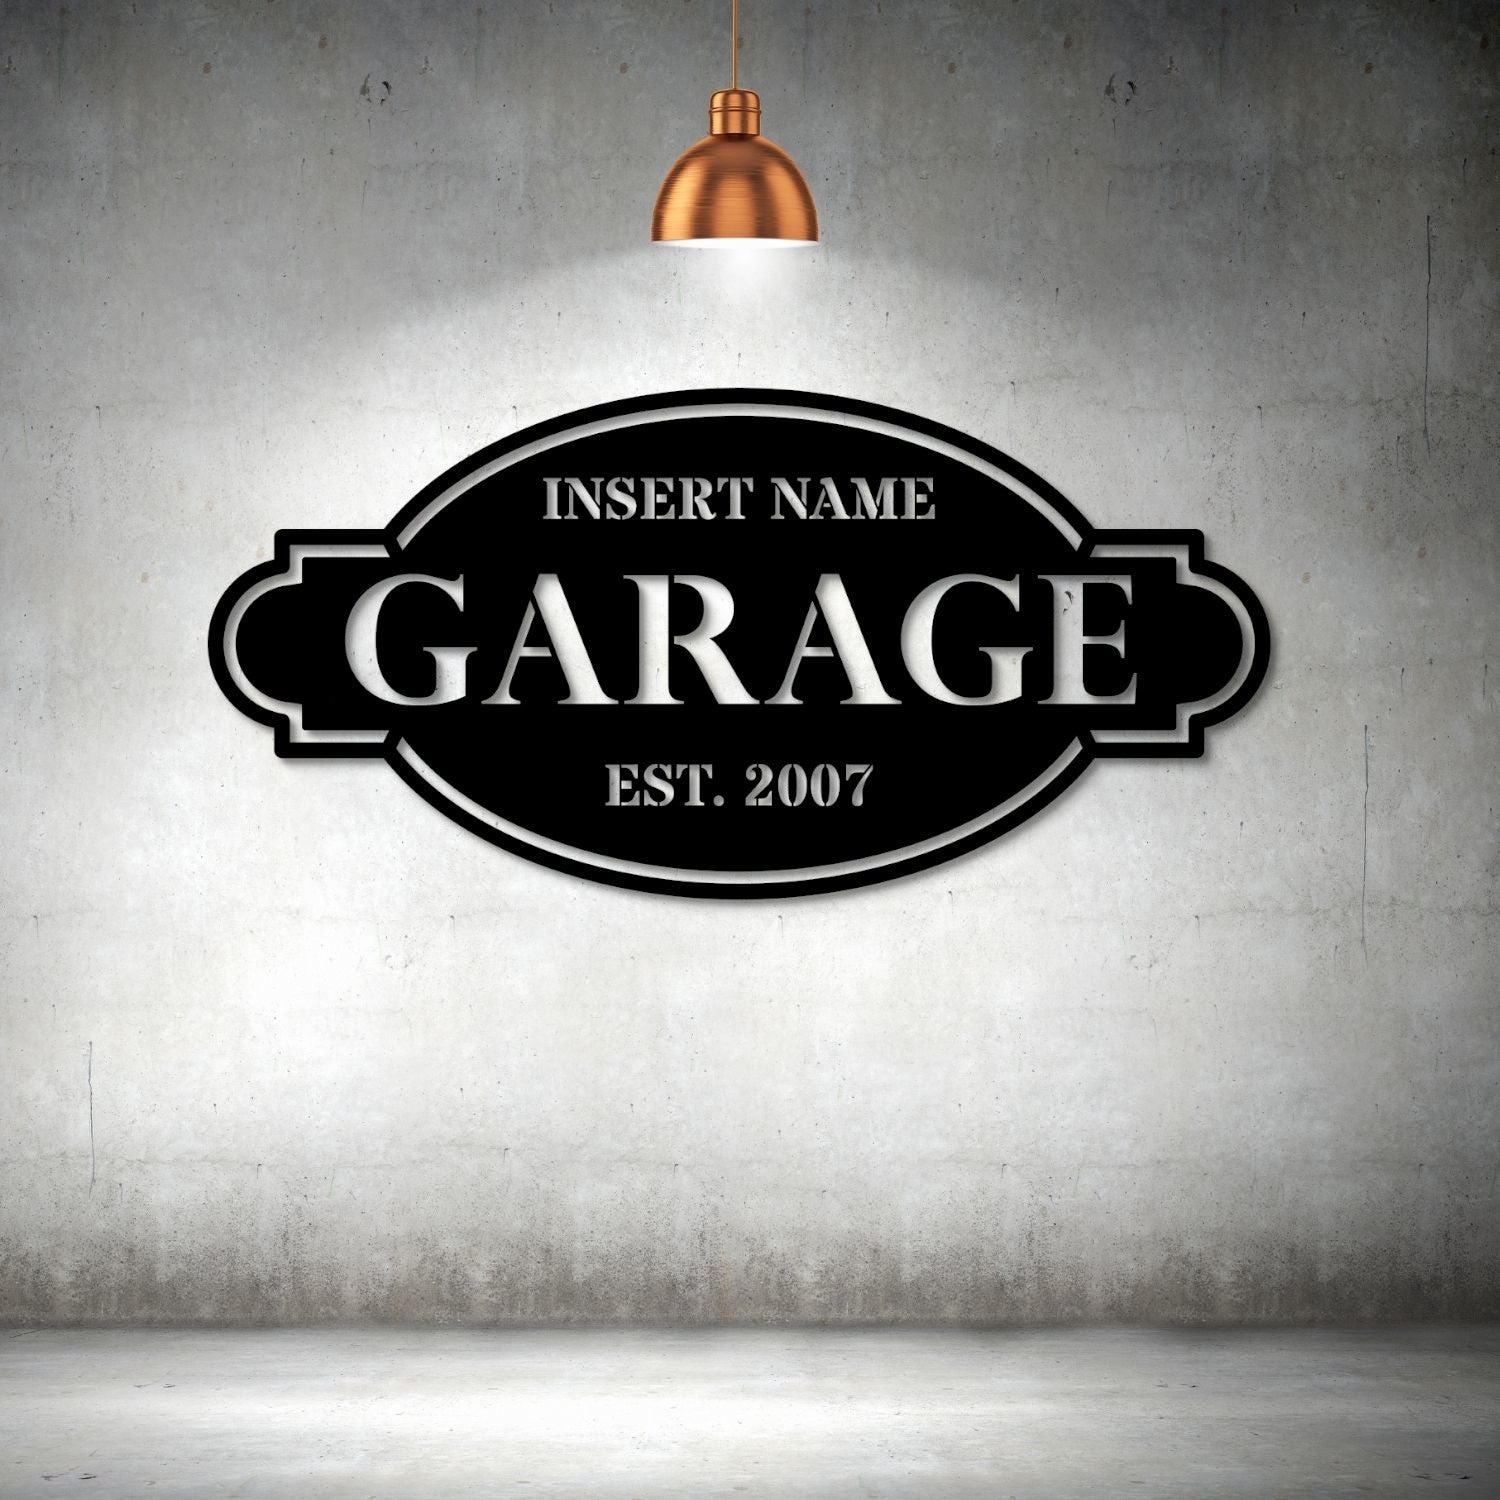 Design Free Car Logo Online - Garage Car Logo Template | Automotive logo  design, Free logo, Garage logo